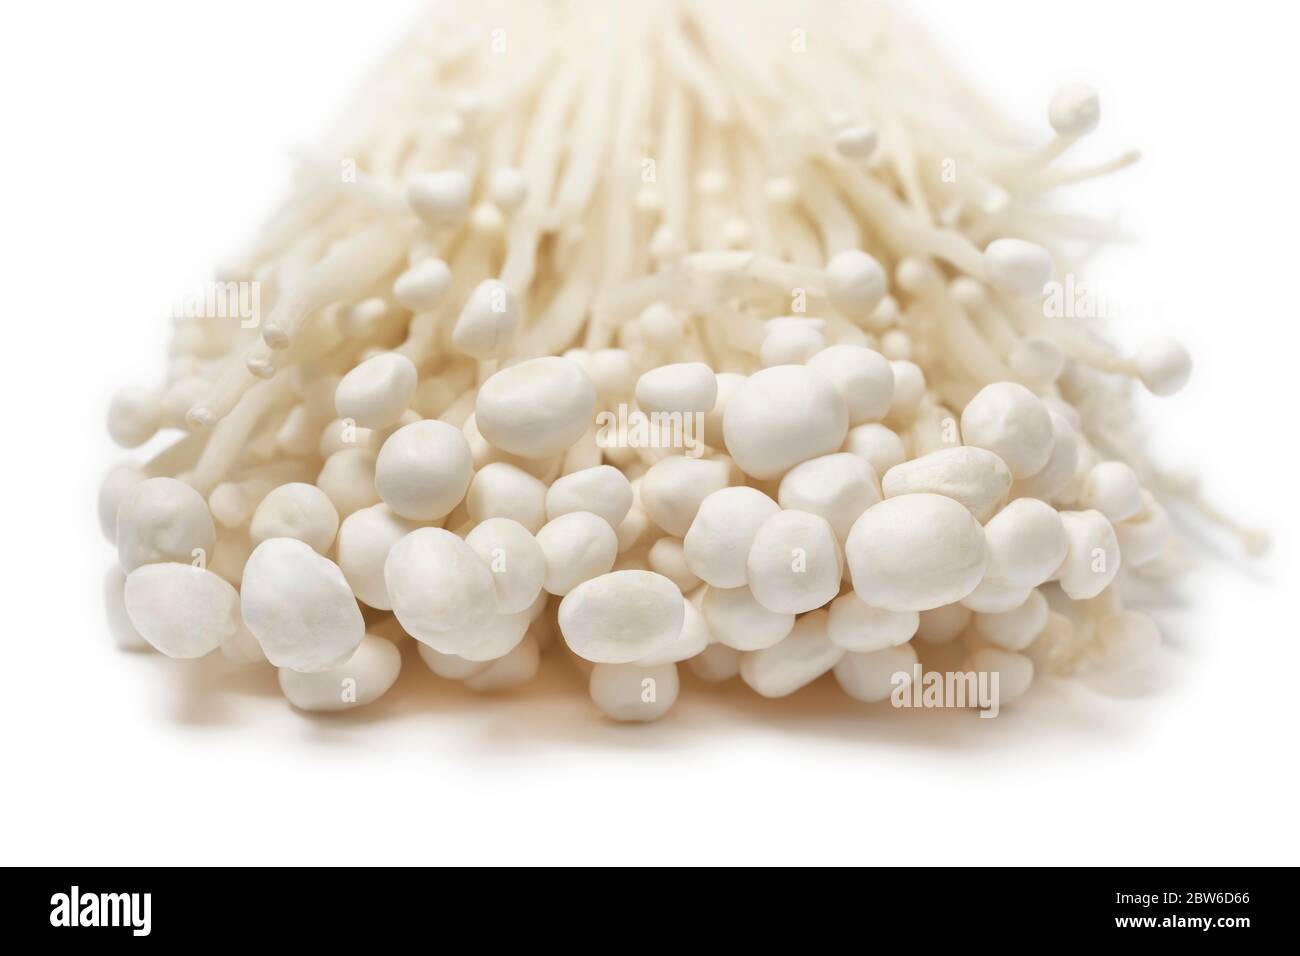 Groupe de champignons enokii blancs frais cultivés, isolés sur fond blanc Banque D'Images